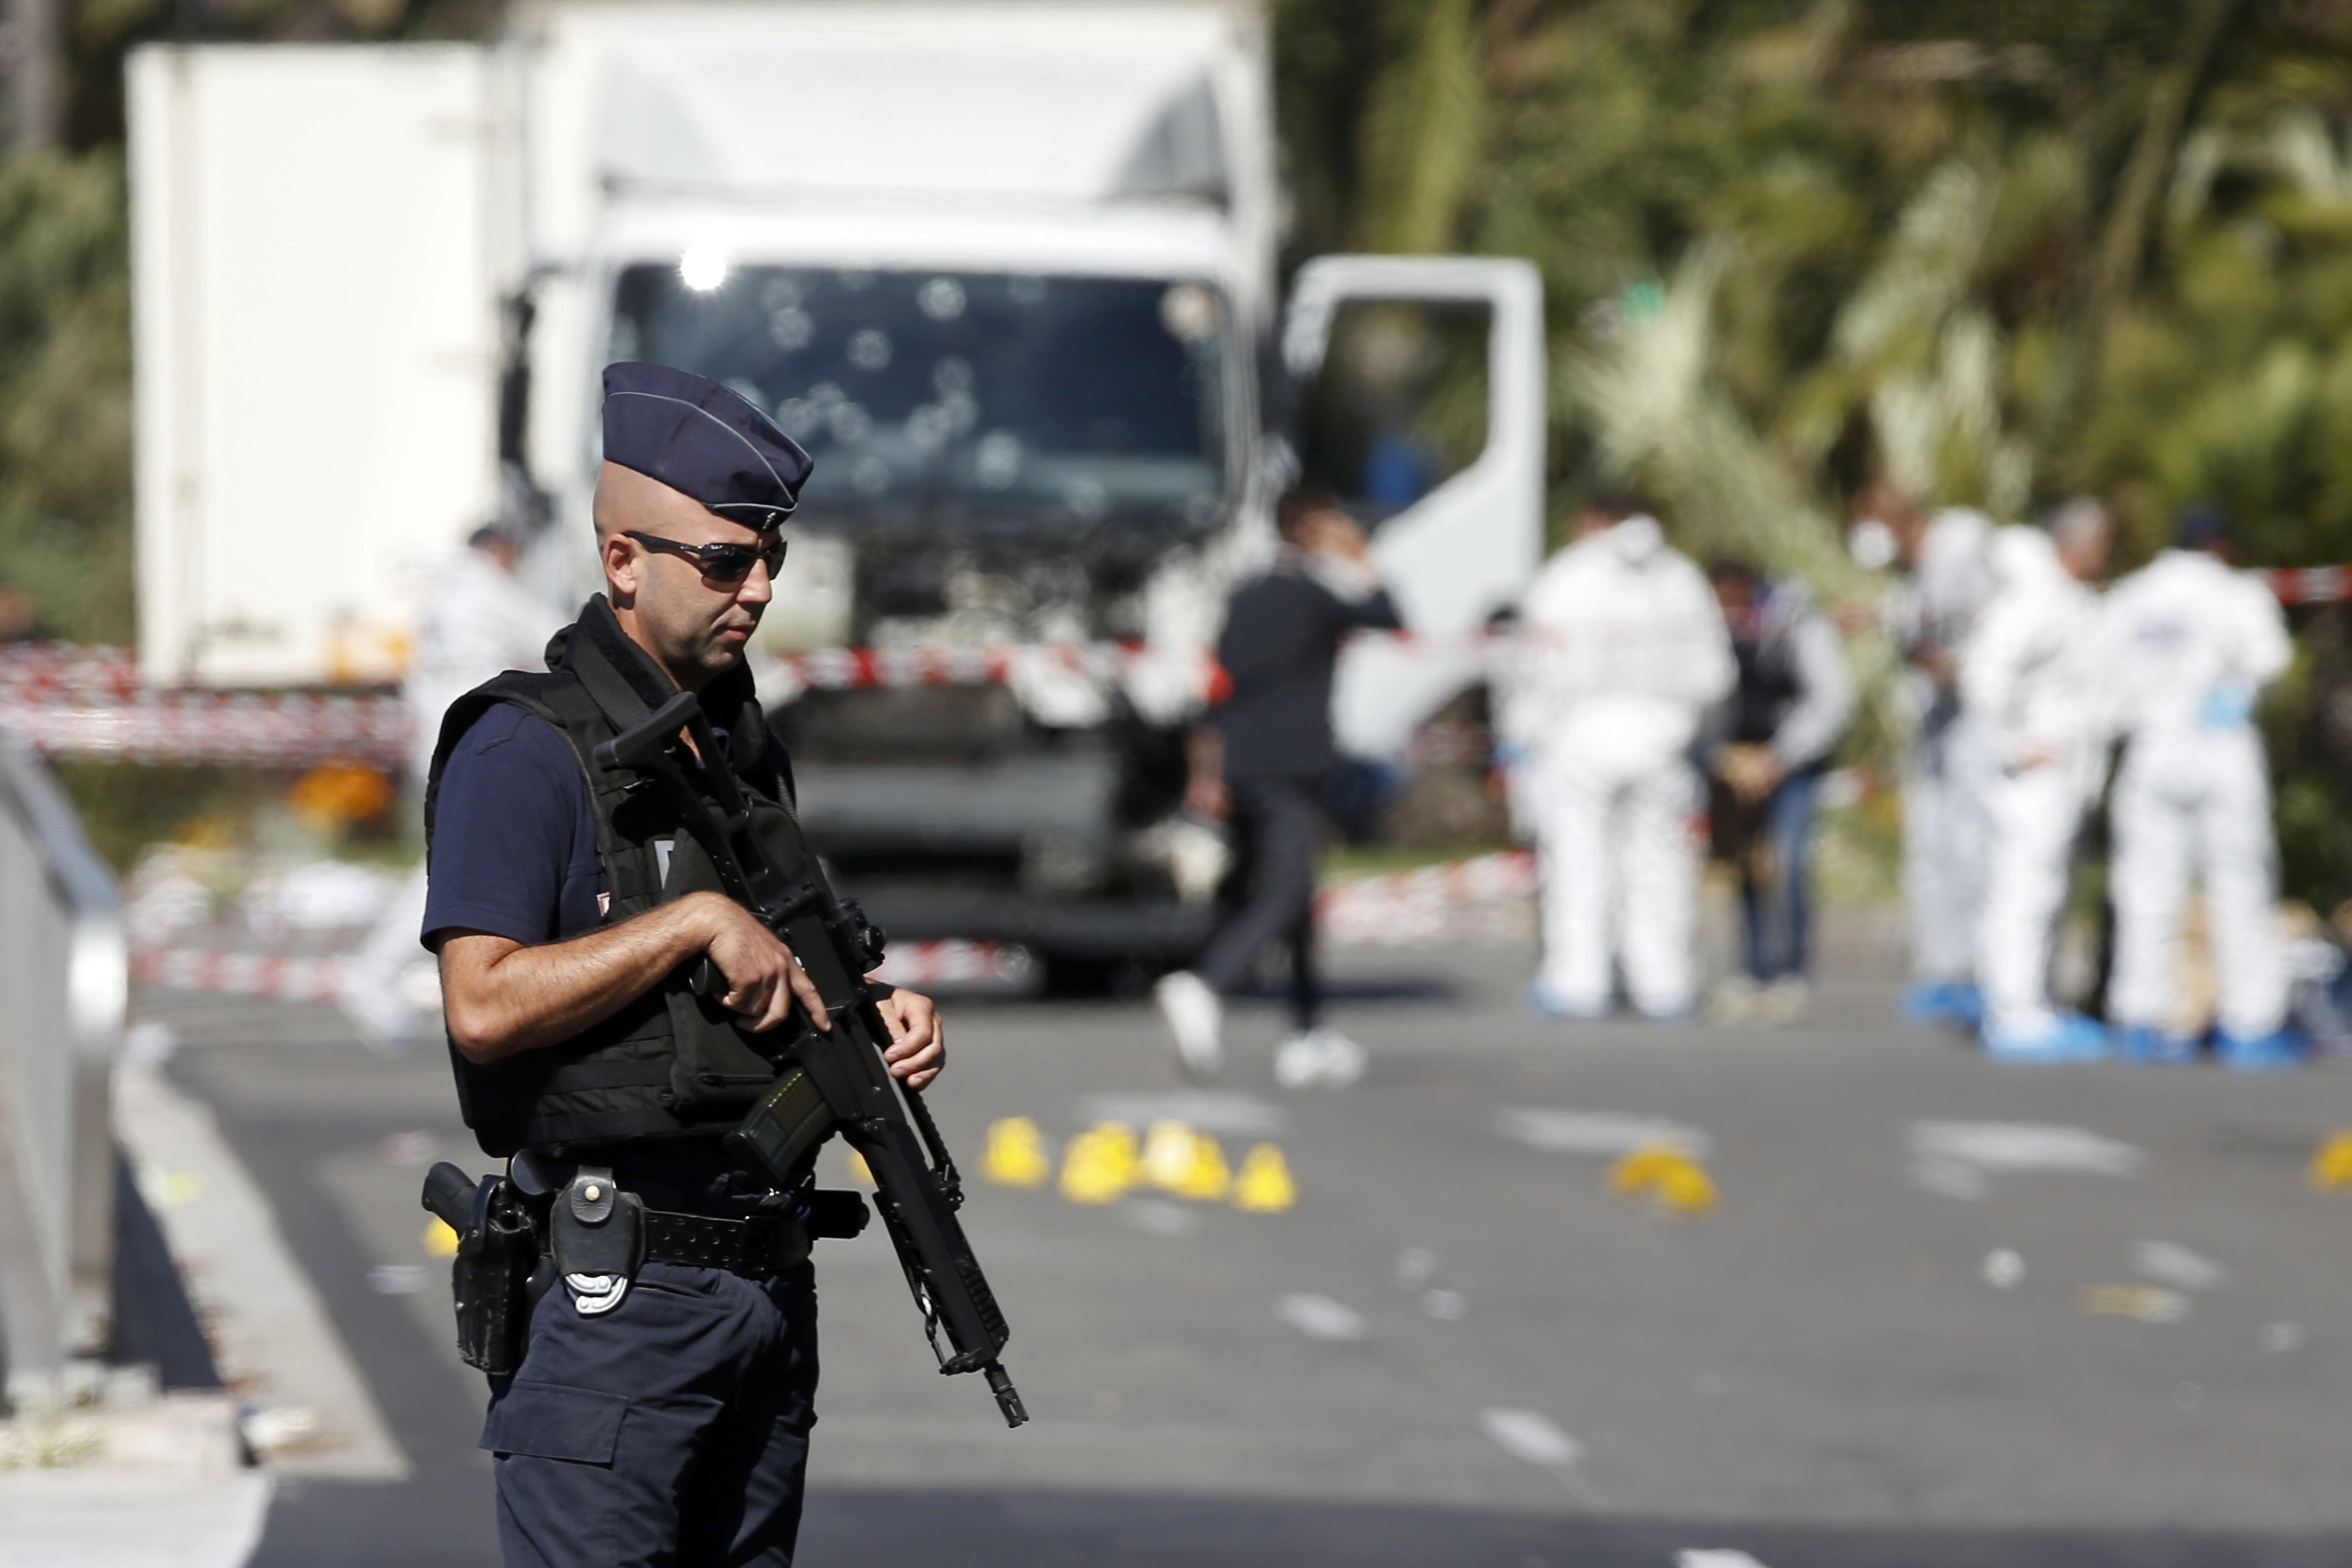 La policía federal del país germano anunció las medidas luego del atentado registrado en la ciudad francesa de Niza que dejó 84 víctimas